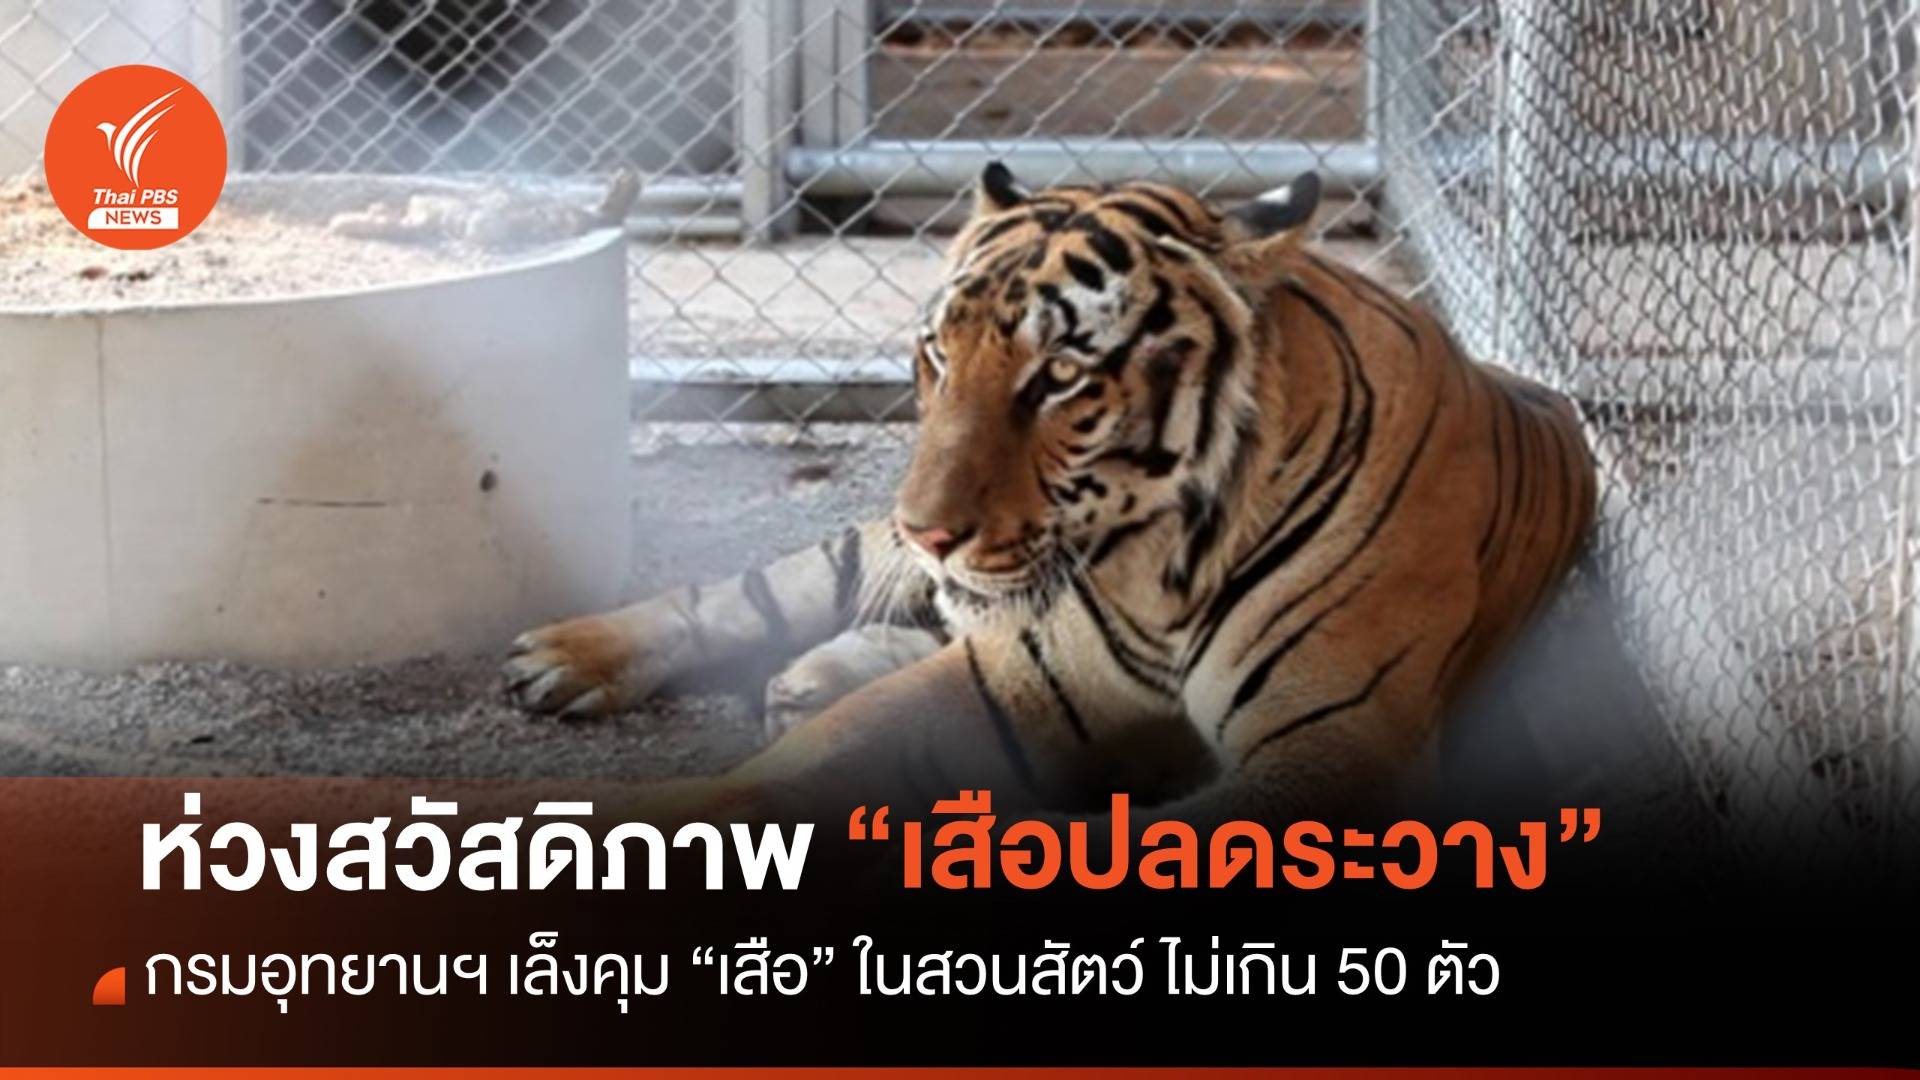 ห่วงสวัสดิภาพ "เสือปลดระวาง" เล็งคุมเสือในสวนสัตว์ไม่เกิน 50 ตัว 